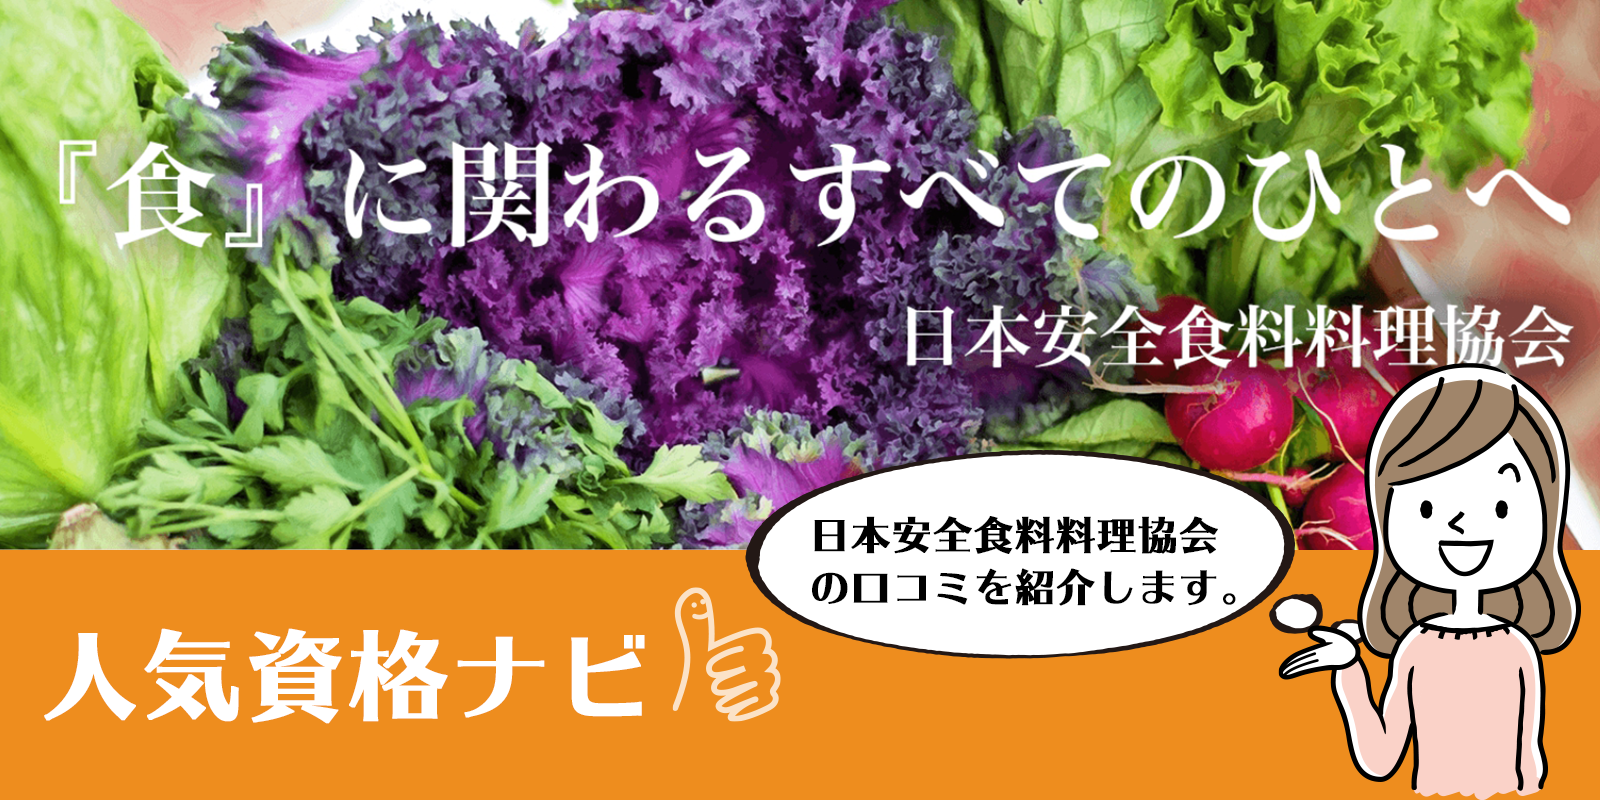 日本安全食料料理協会のアイキャッチ画像